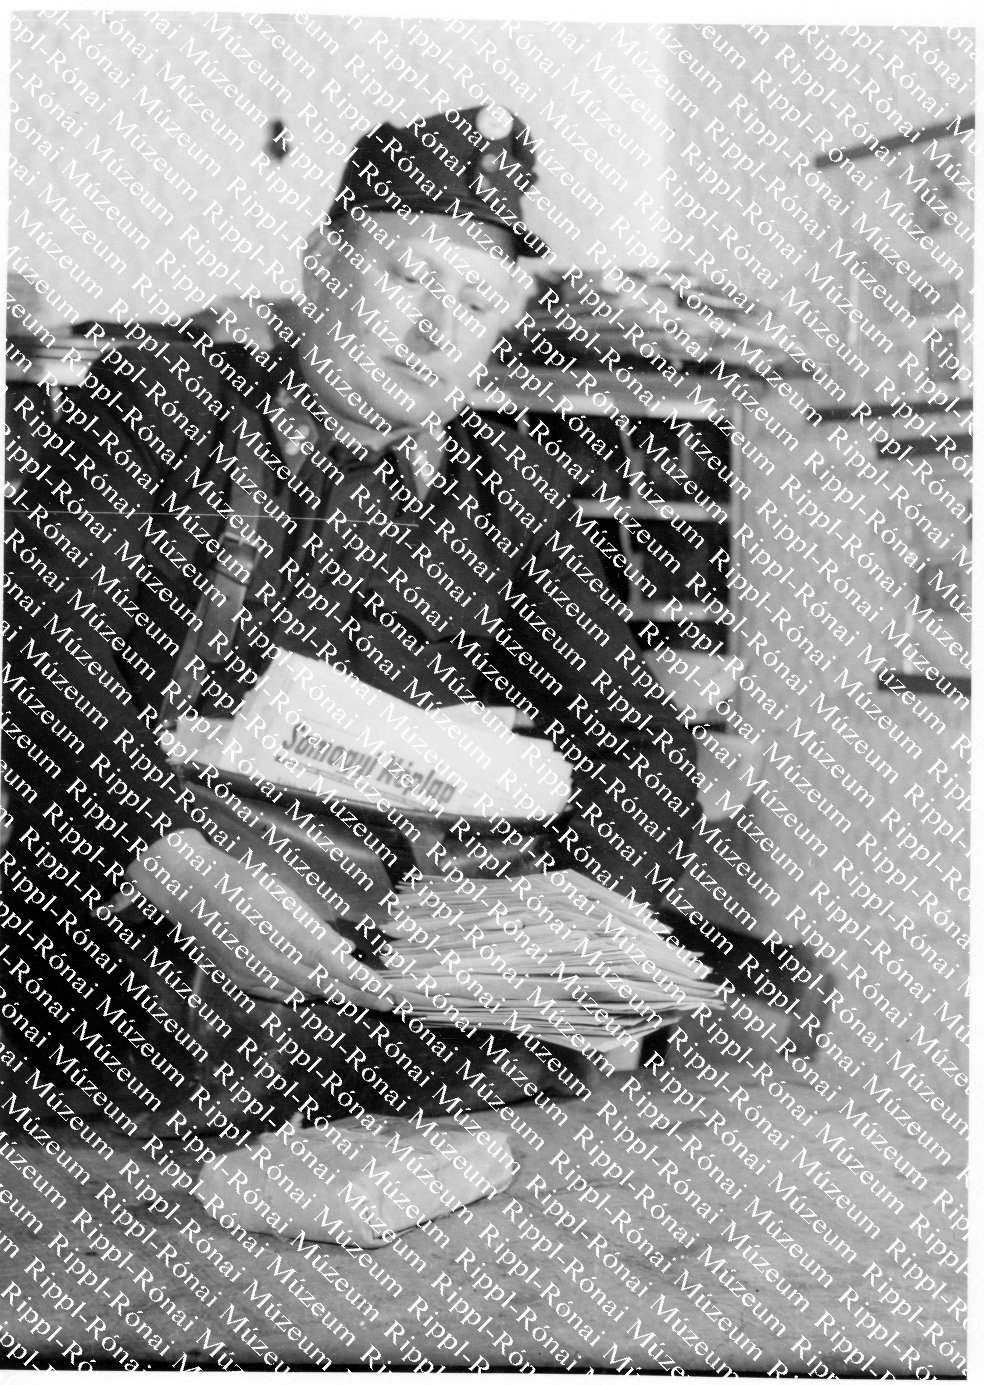 Weisinger József, a csurgói posta dolgozója (Rippl-Rónai Múzeum CC BY-NC-SA)